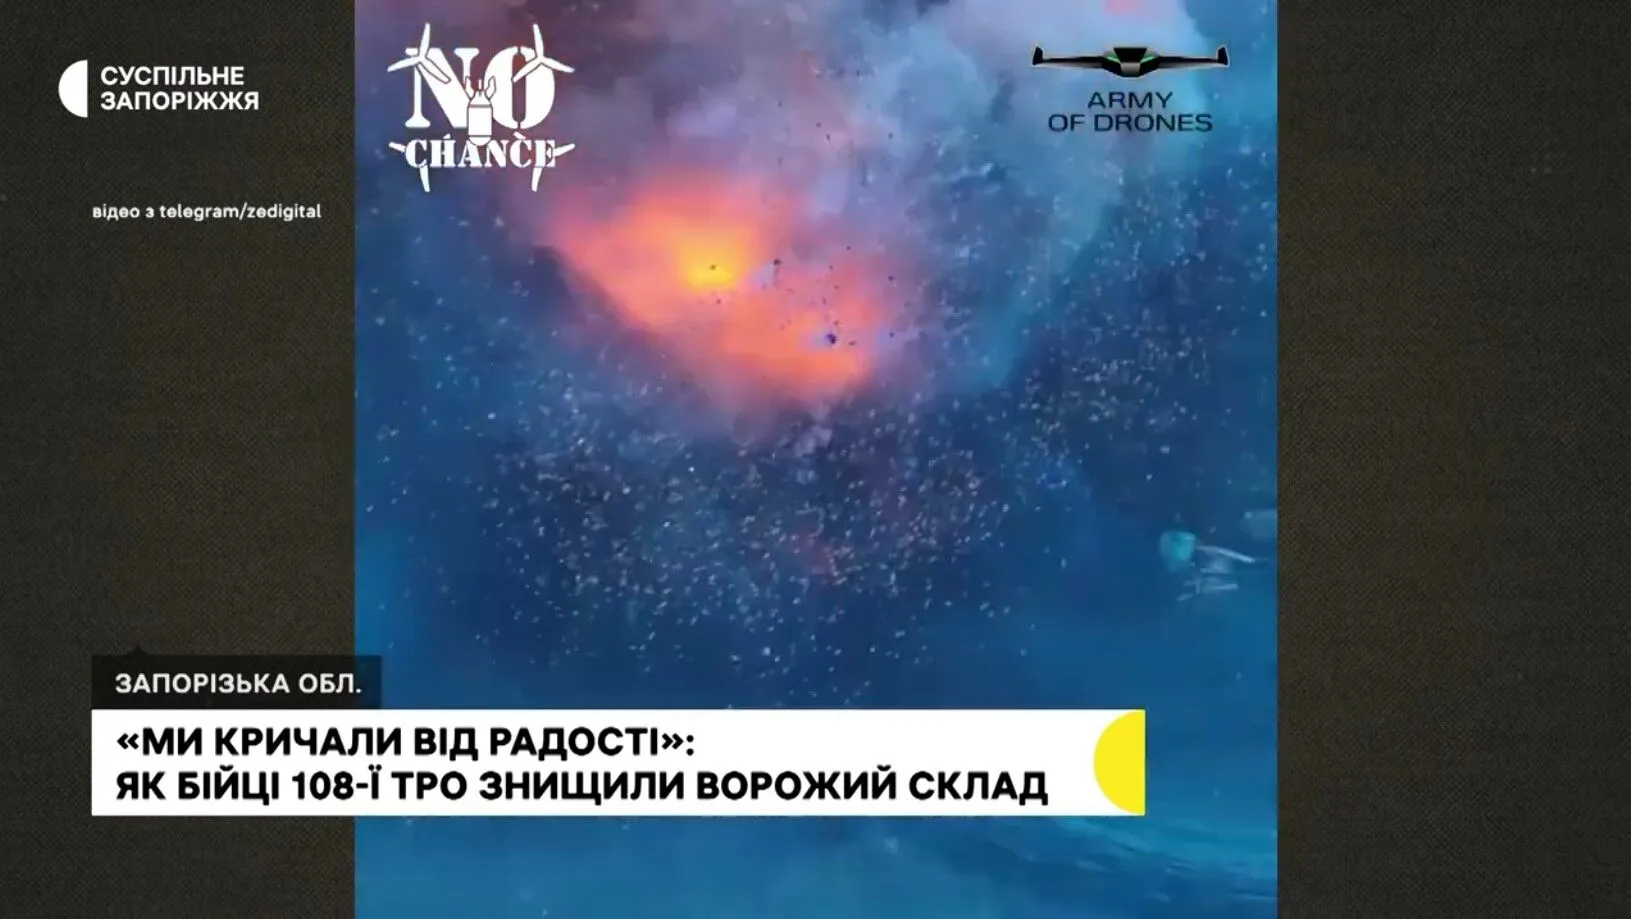 "Мы кричали от радости": пилот FPV-дрона рассказал, как удалось уничтожить склад мин врага на Запорожском направлении. Видео